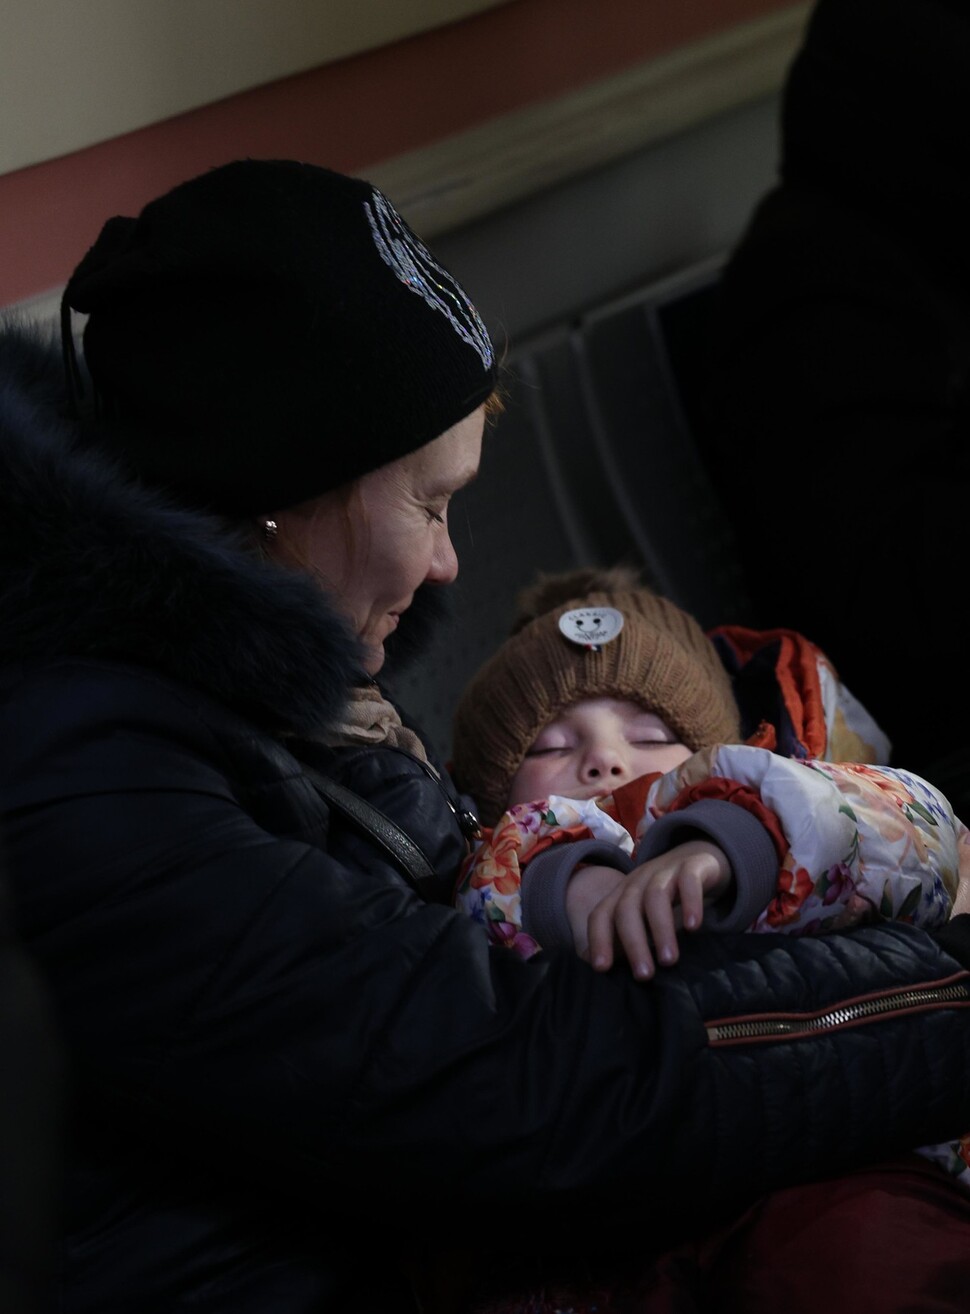 7일(현지시각) 폴란드 프셰미실 중앙역 대합실에서 우크라이나 국경을 넘어 열차를 기다리고 있는 할머니가 아기를 안고 있다. 프셰미실/김혜윤 기자